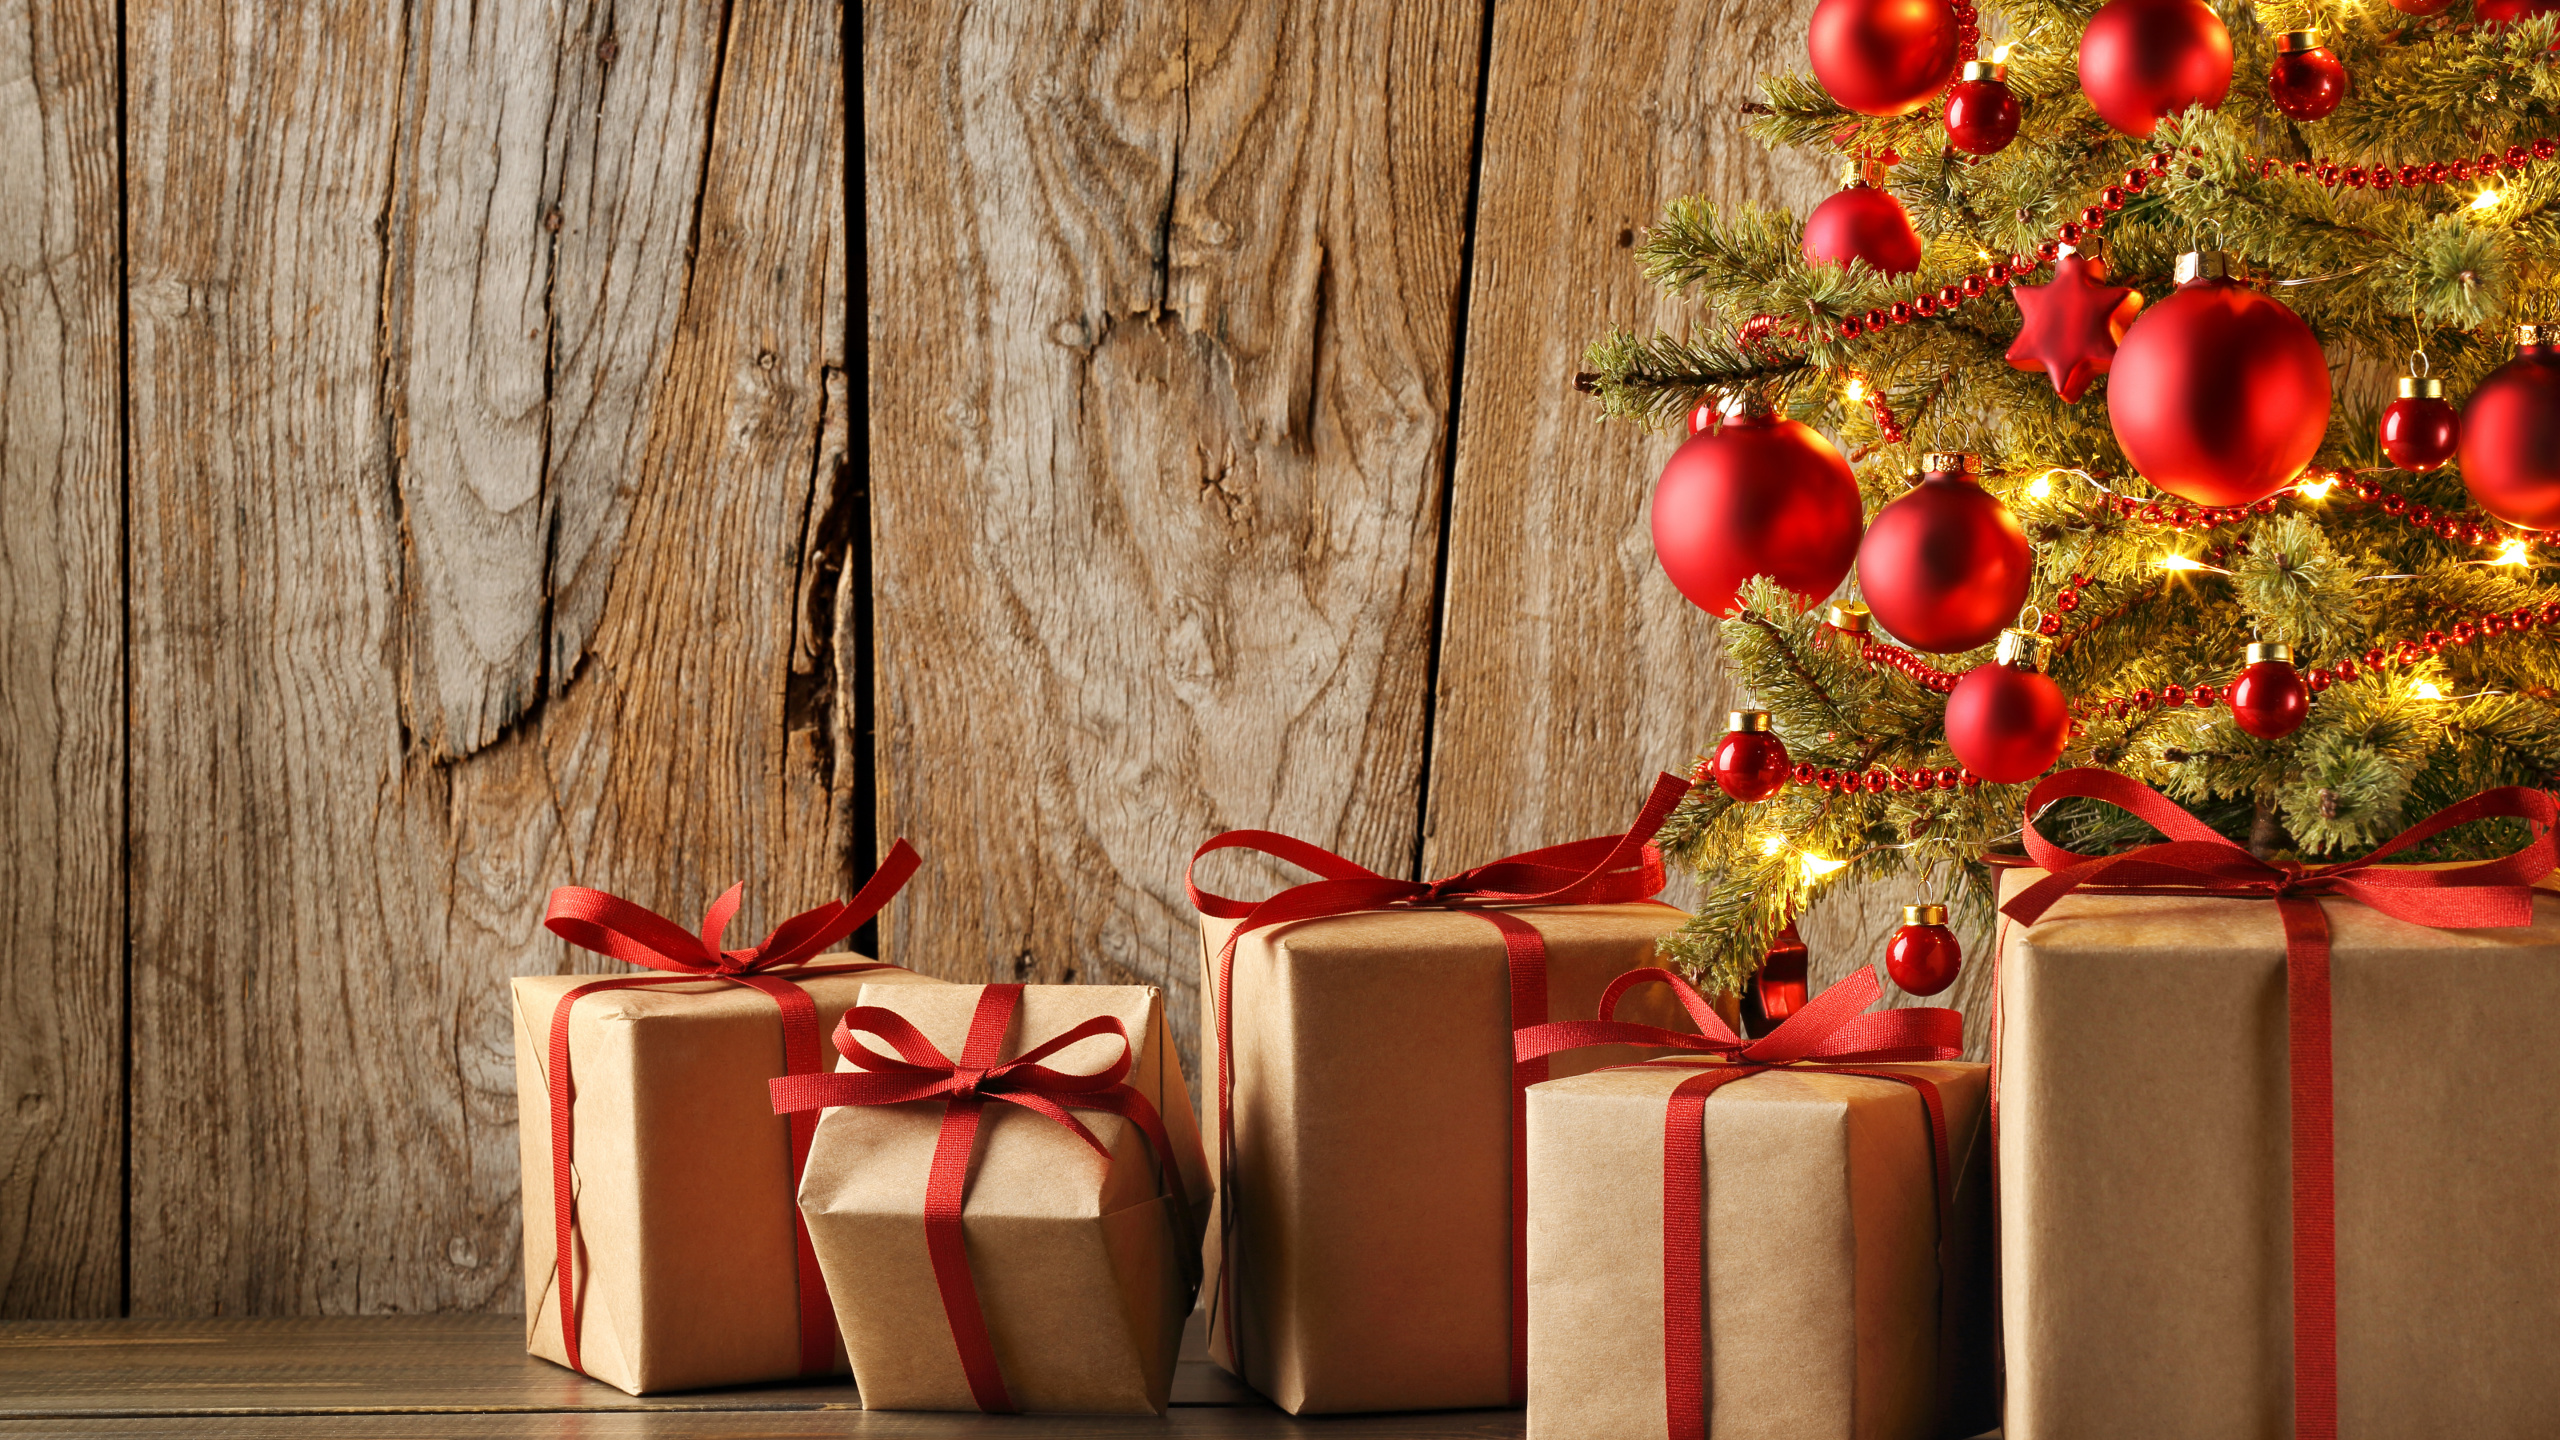 圣诞节那天, 礼物, 圣诞节的装饰品, 礼品包装, 新的一年 壁纸 2560x1440 允许